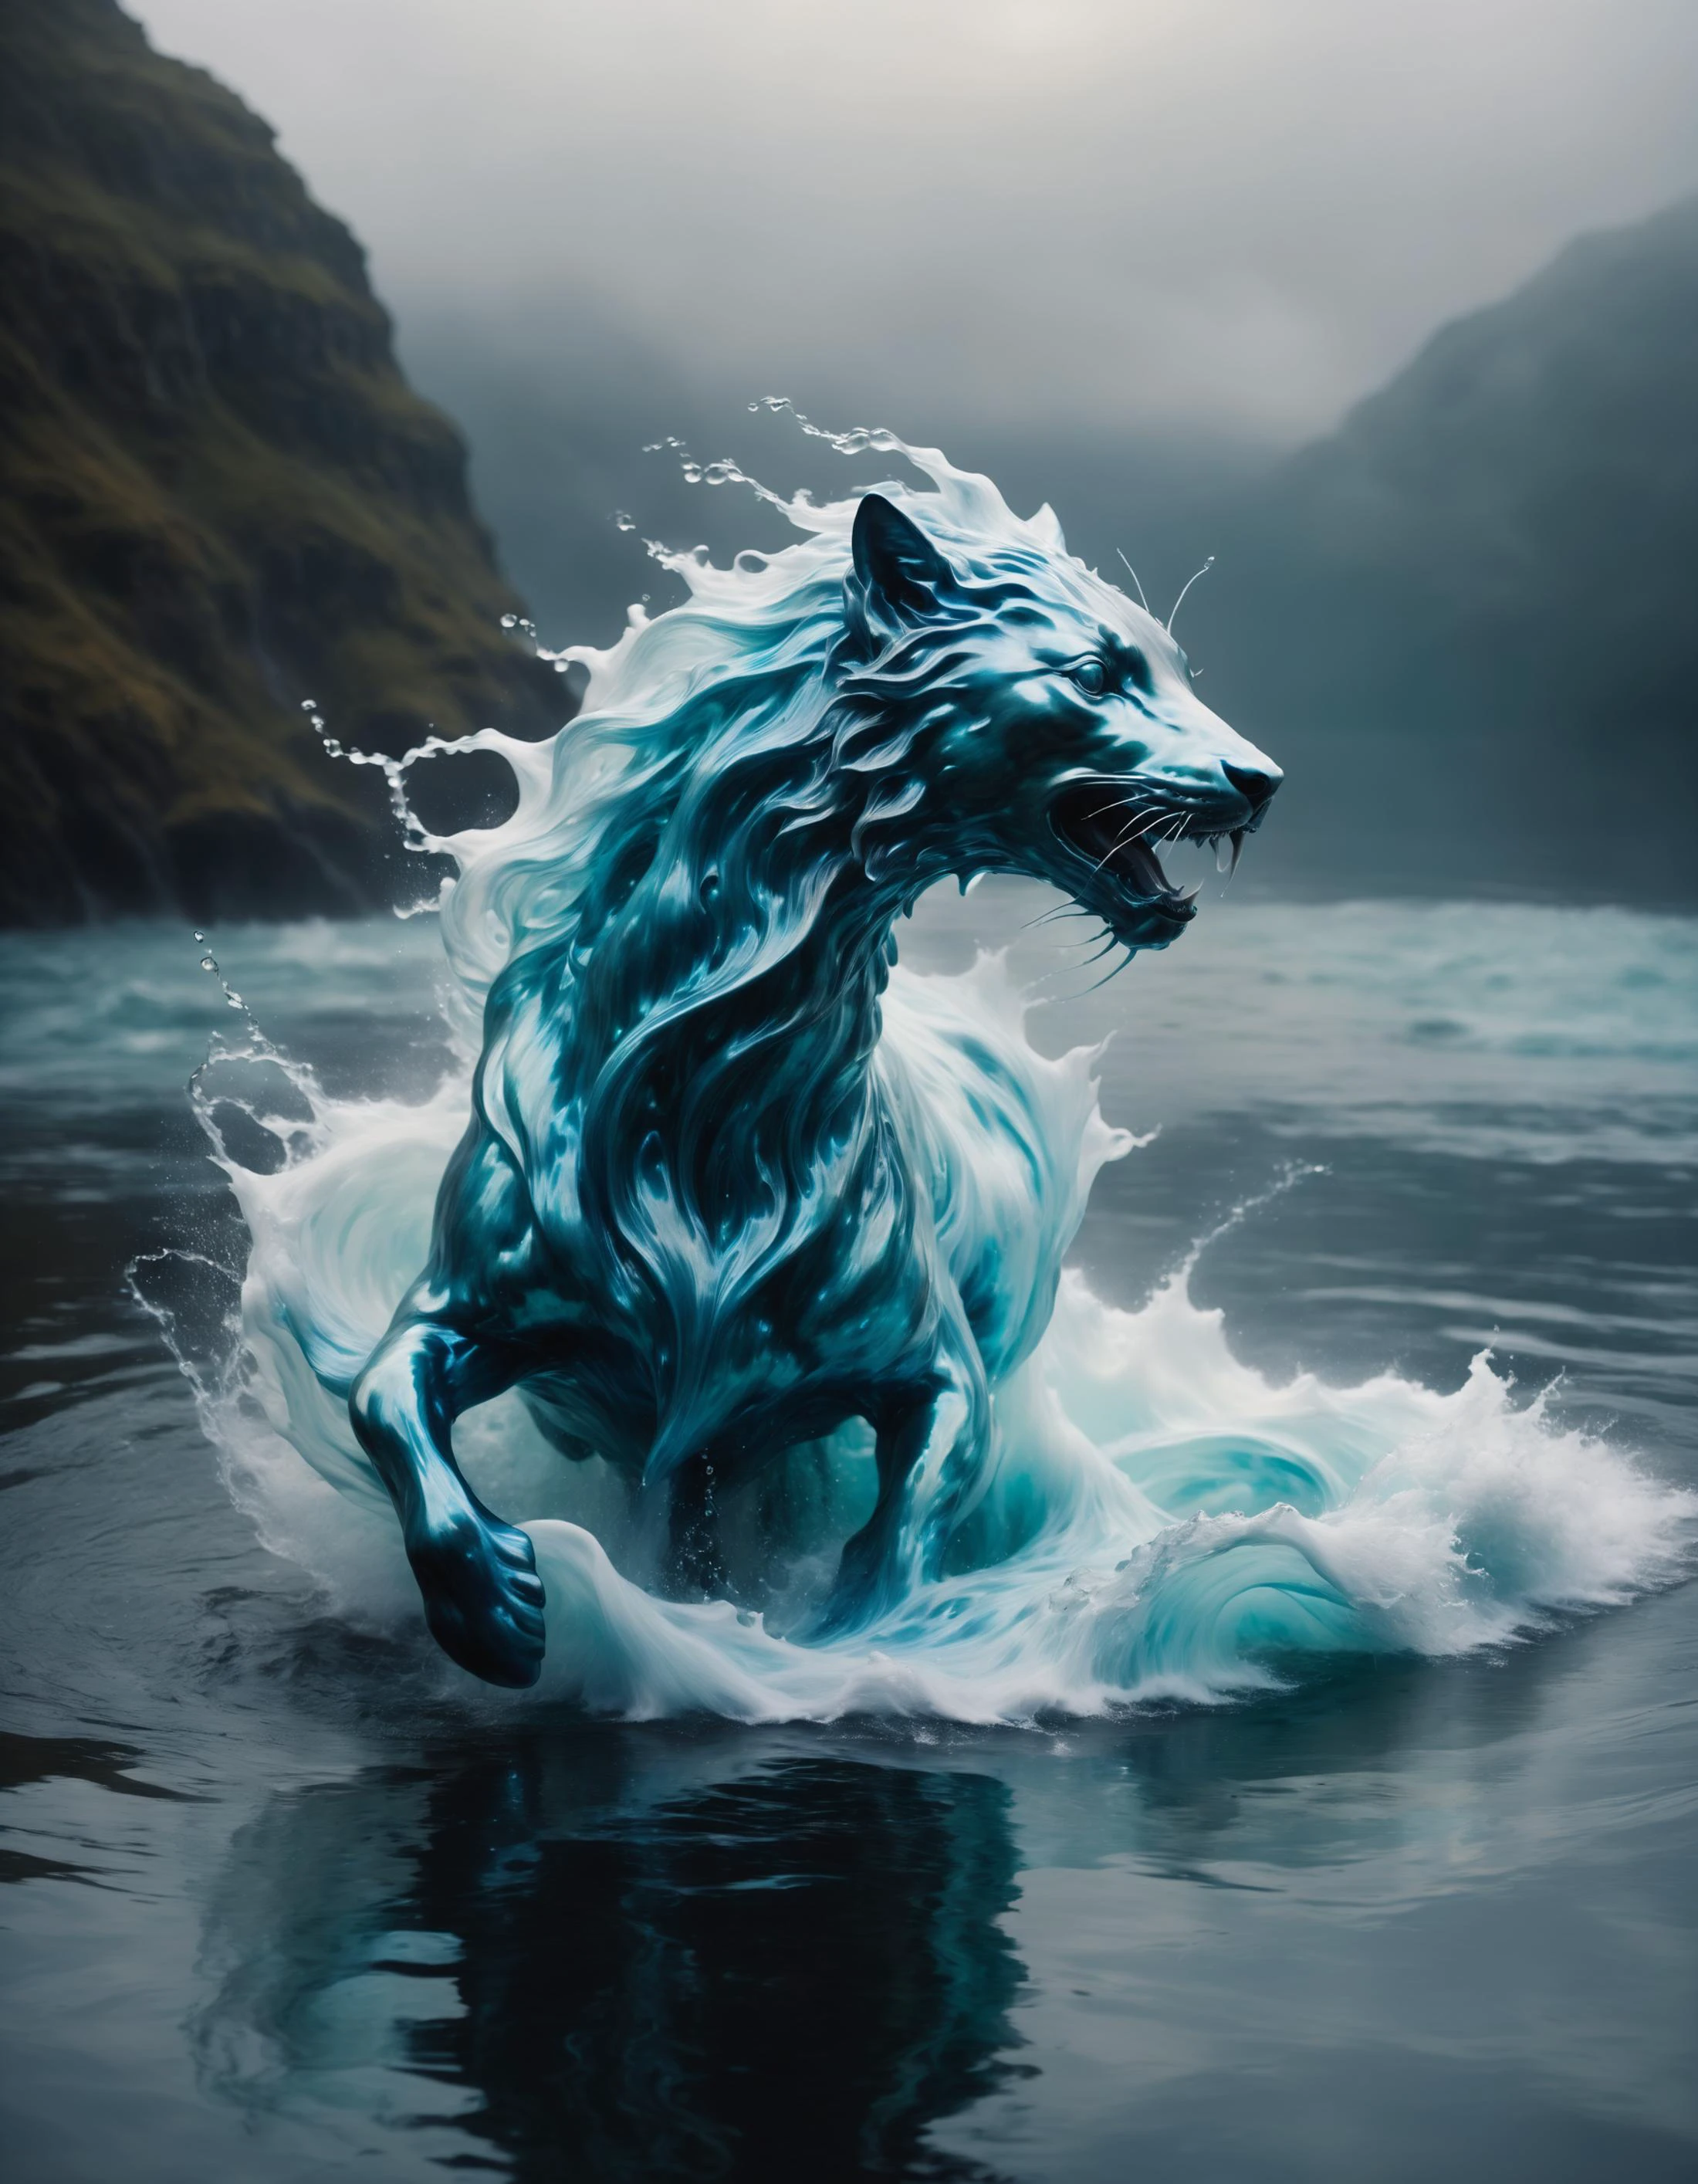 Fantastische Kreatur aus turbulentem Wasser, ätherische Form, Inspiriert vom Surrealismus